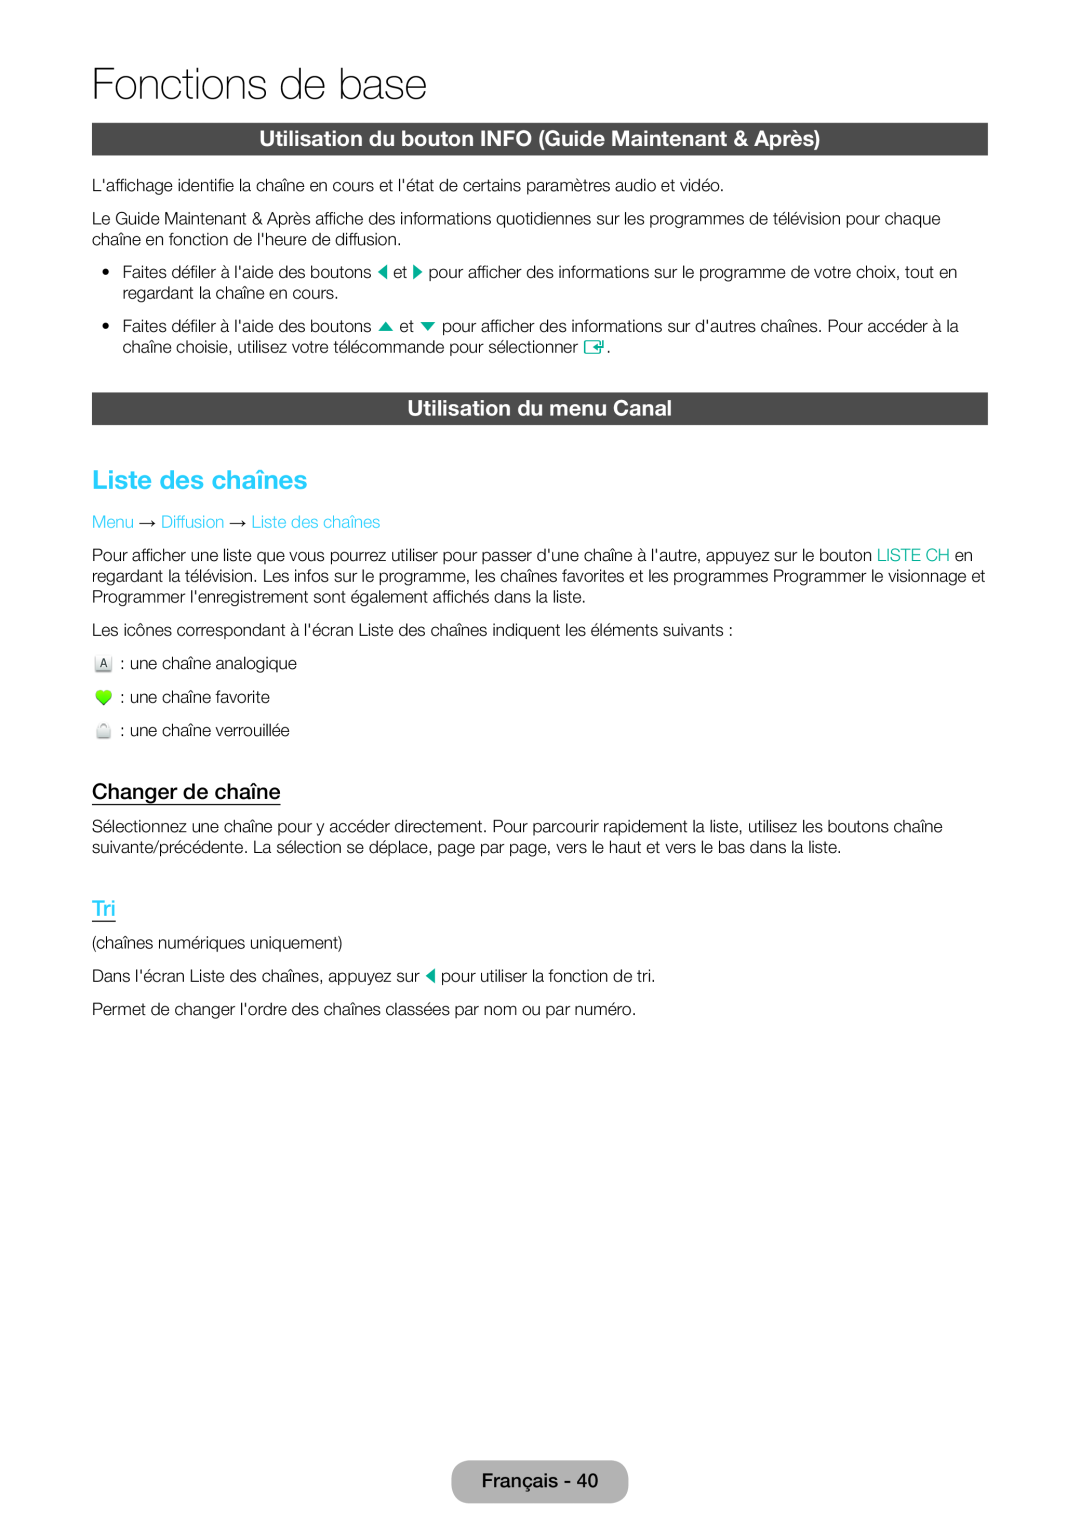 Samsung LT24D390EW/EN Liste des chaînes, Utilisation du bouton INFO Guide Maintenant & Après, Utilisation du menu Canal 